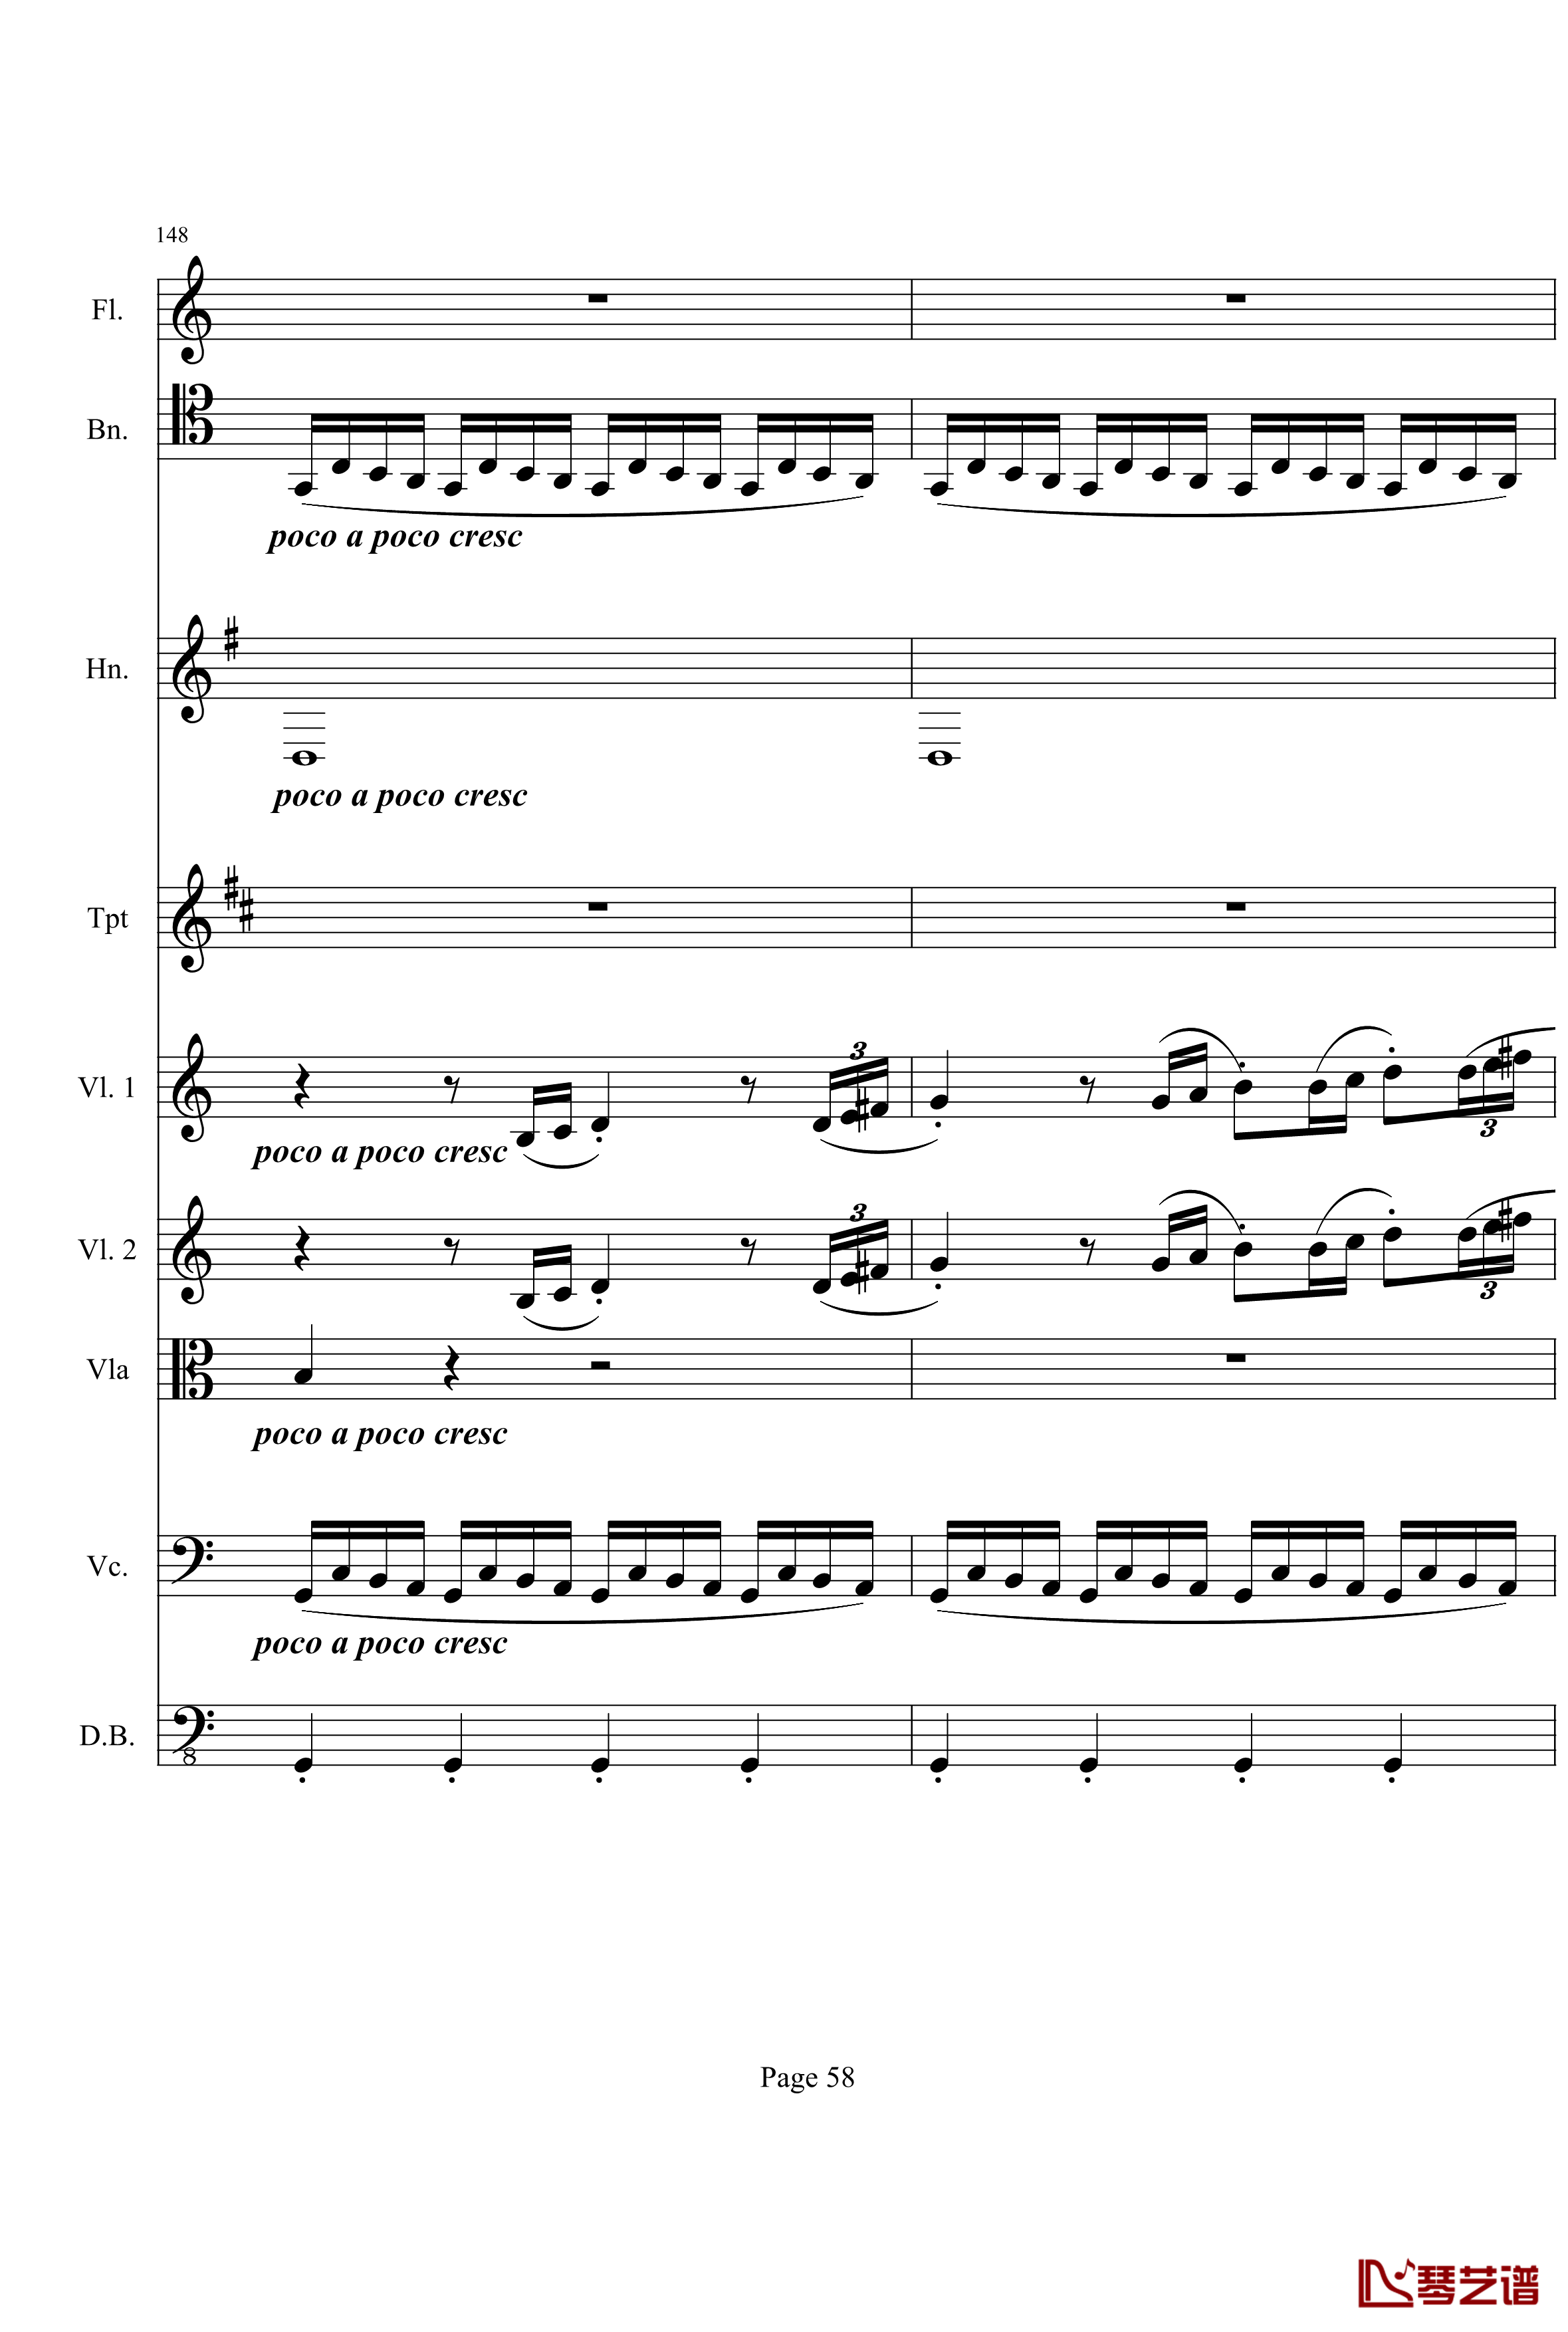 奏鸣曲之交响钢琴谱-第21-Ⅰ-贝多芬-beethoven58